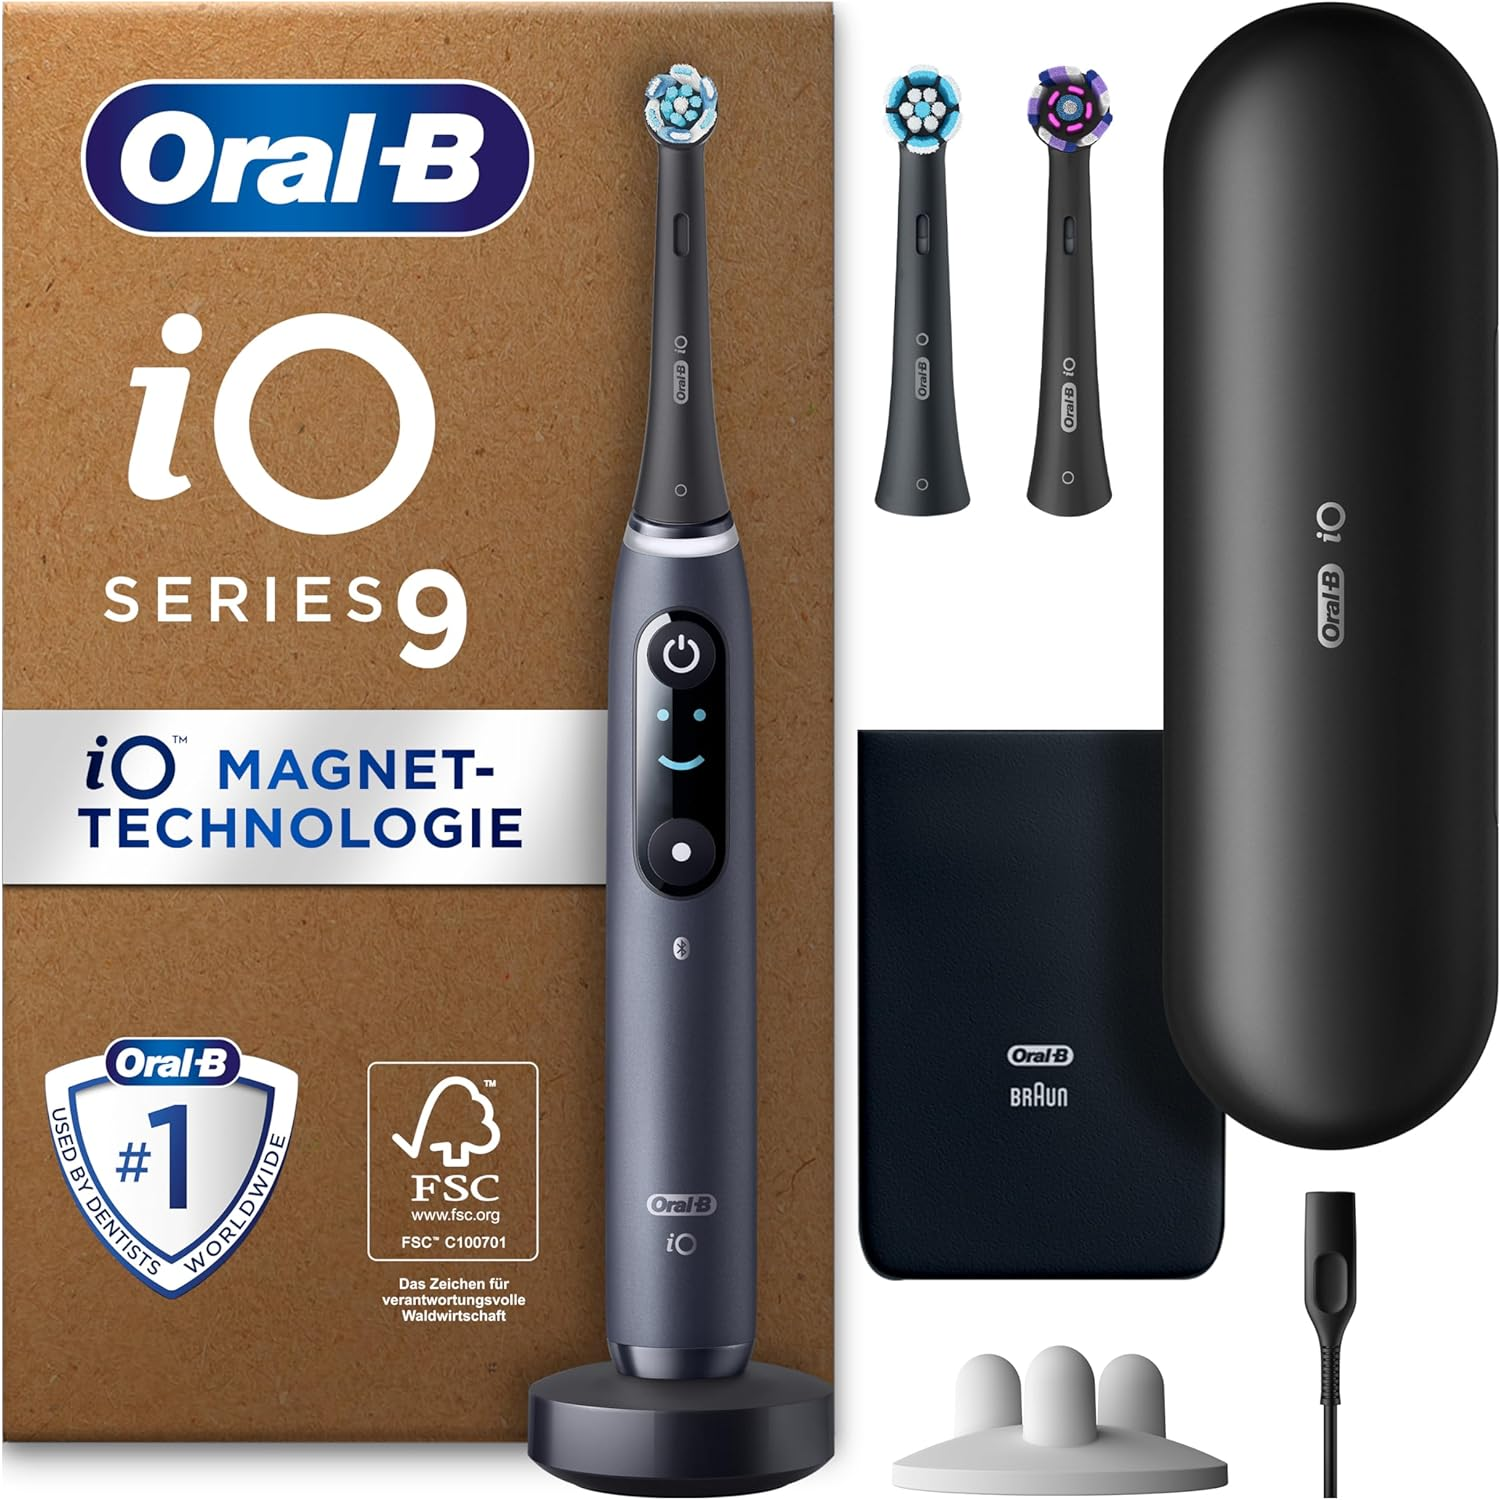 Oral-B iO Series 9 Plus Edition Elektrische Zahnbürste mit 3 Aufsteckbürsten und 7 Putzmodi bei Amazon